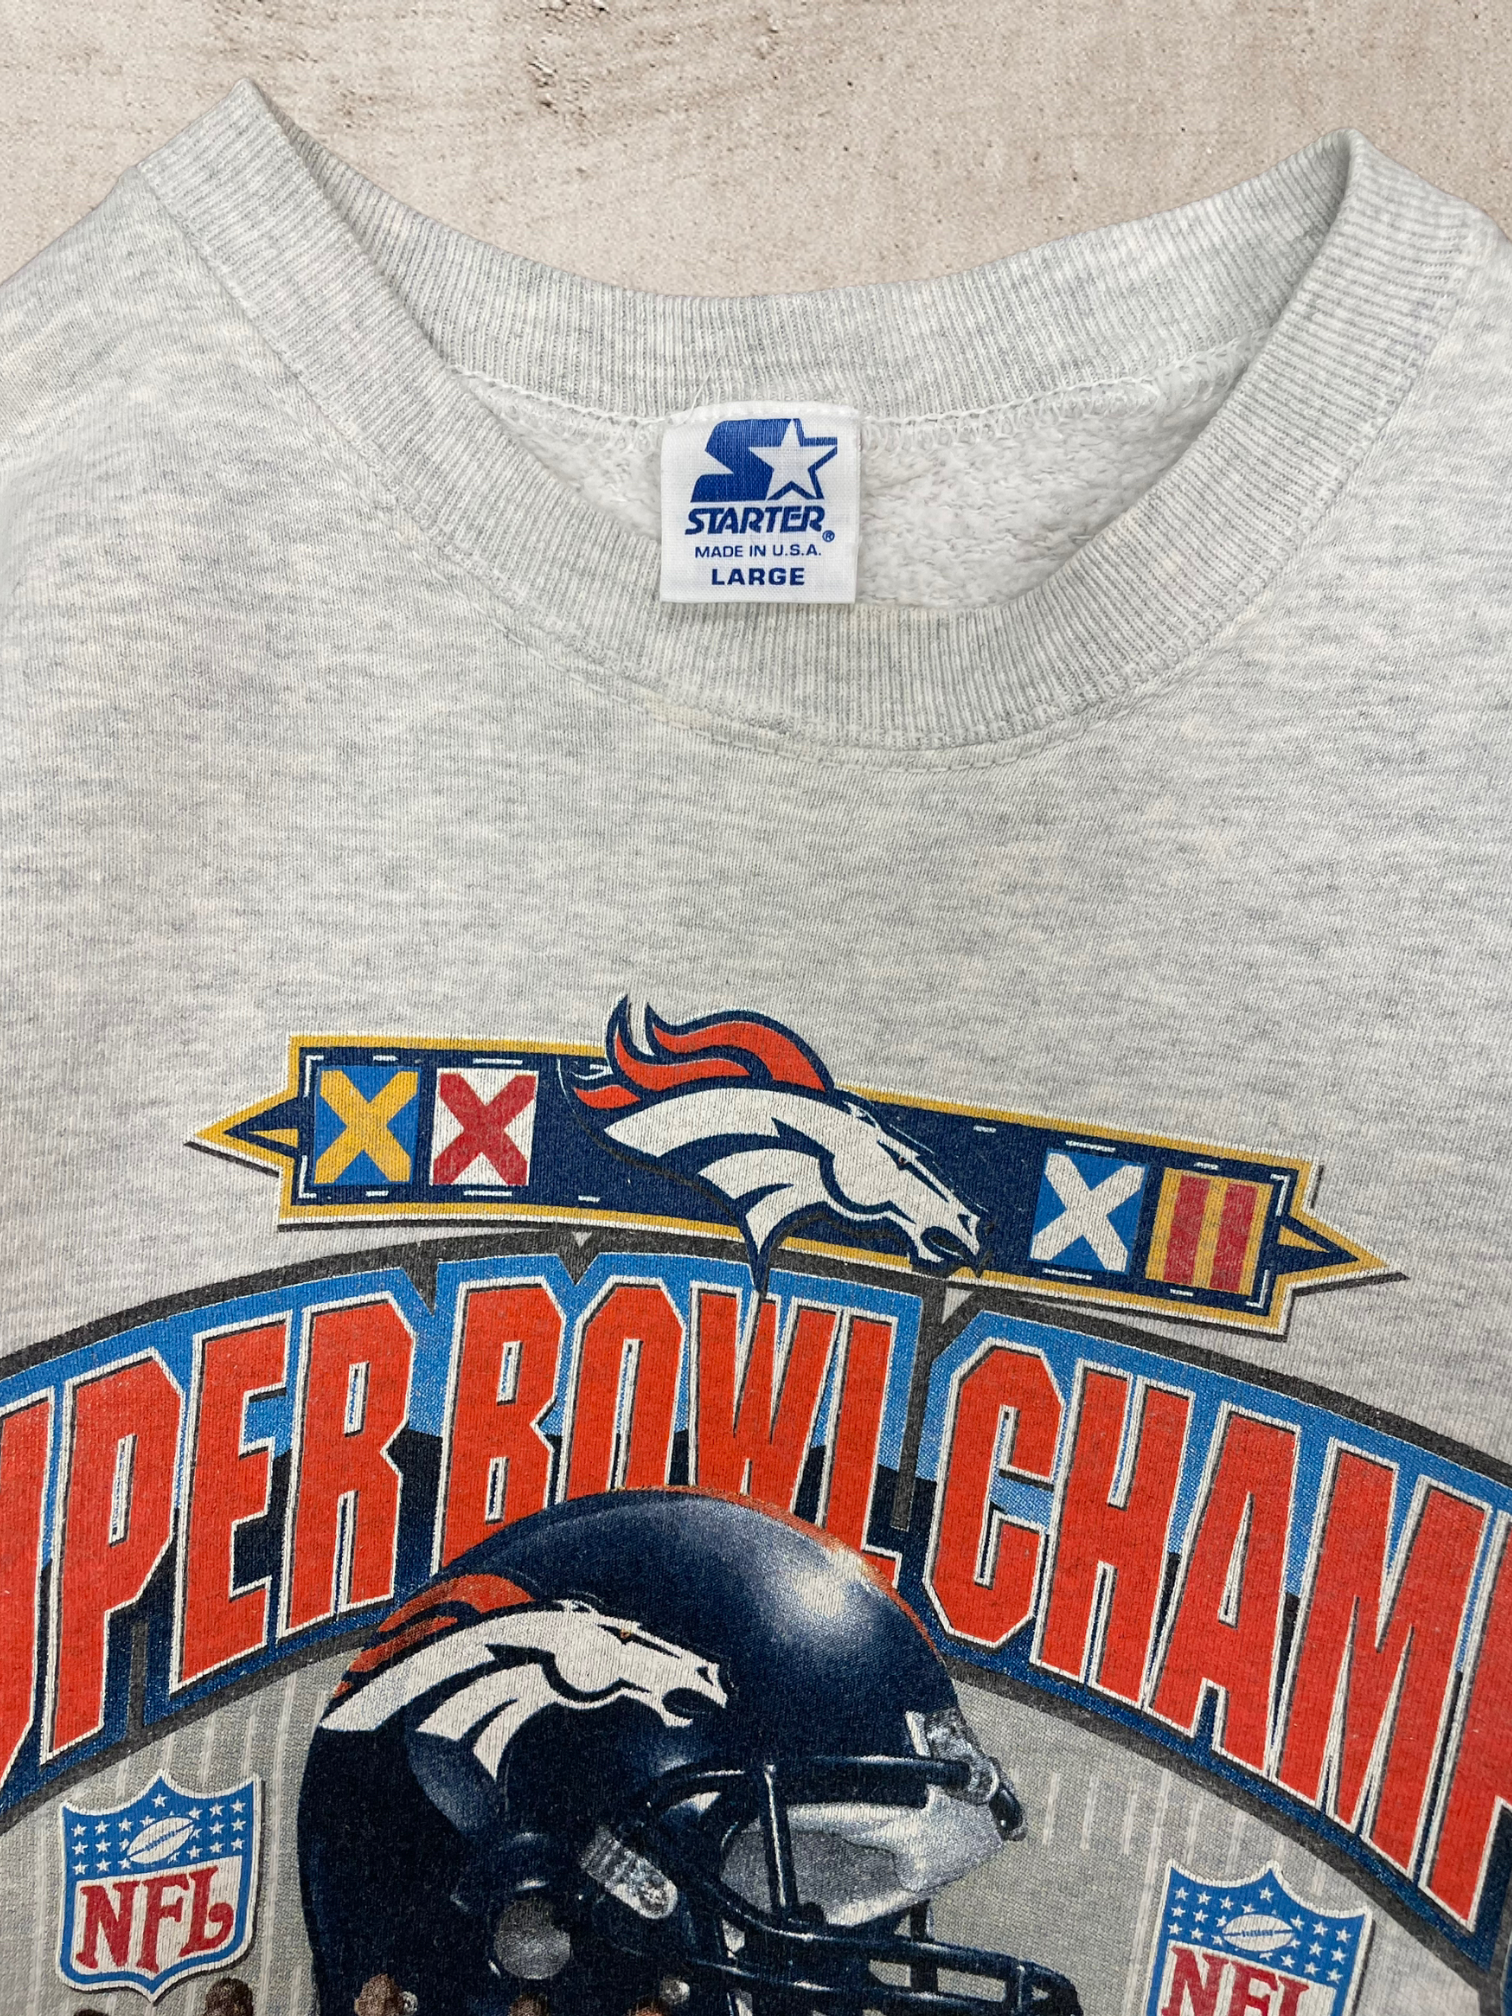 1998 Denver Broncos Super Bowl Championship Crewneck - Large